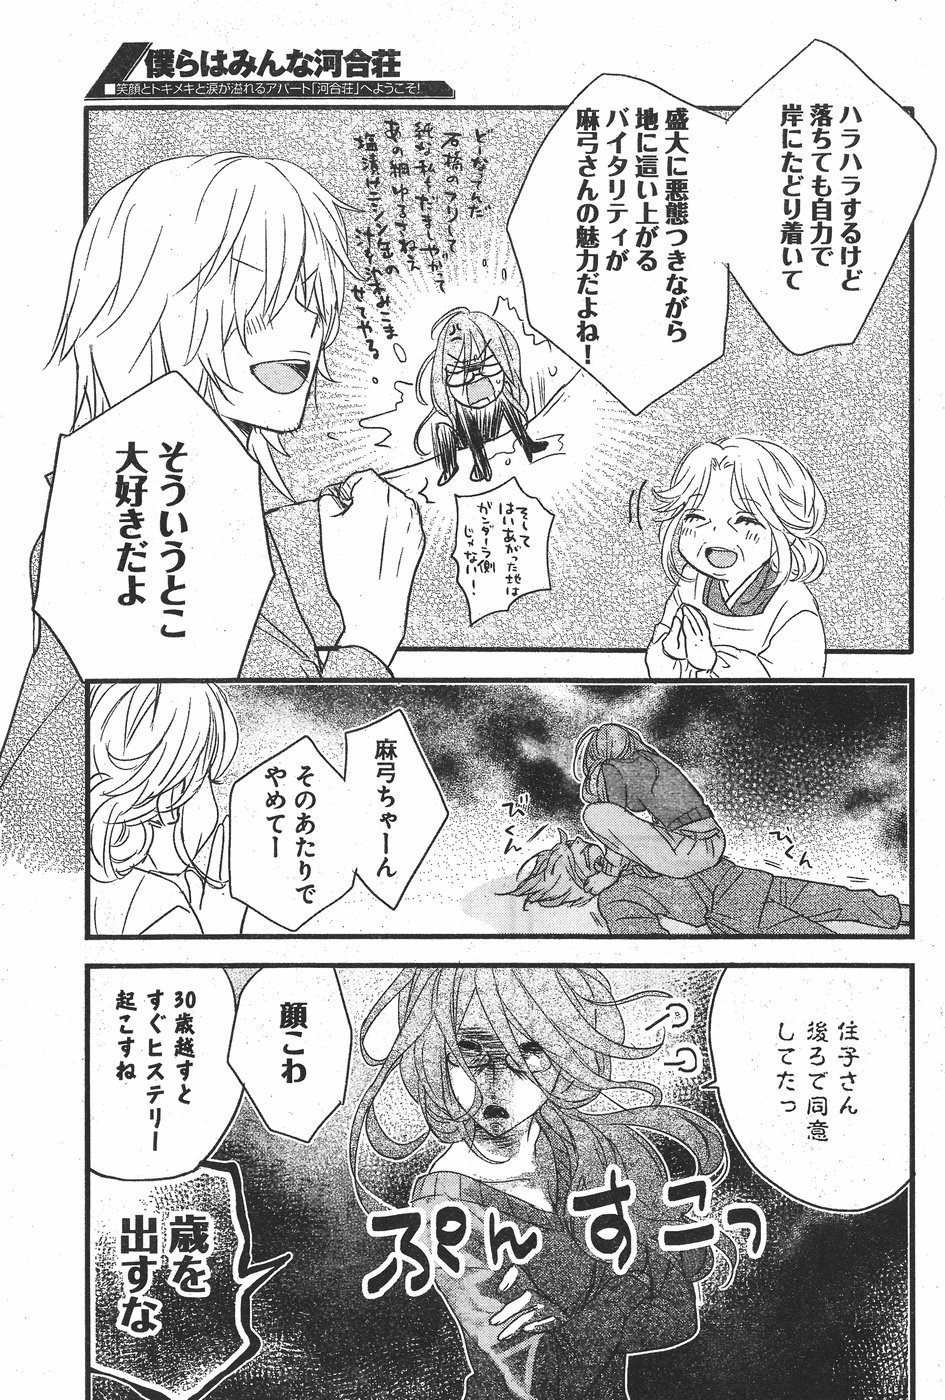 Bokura wa Minna Kawaisou - Chapter 80 - Page 14